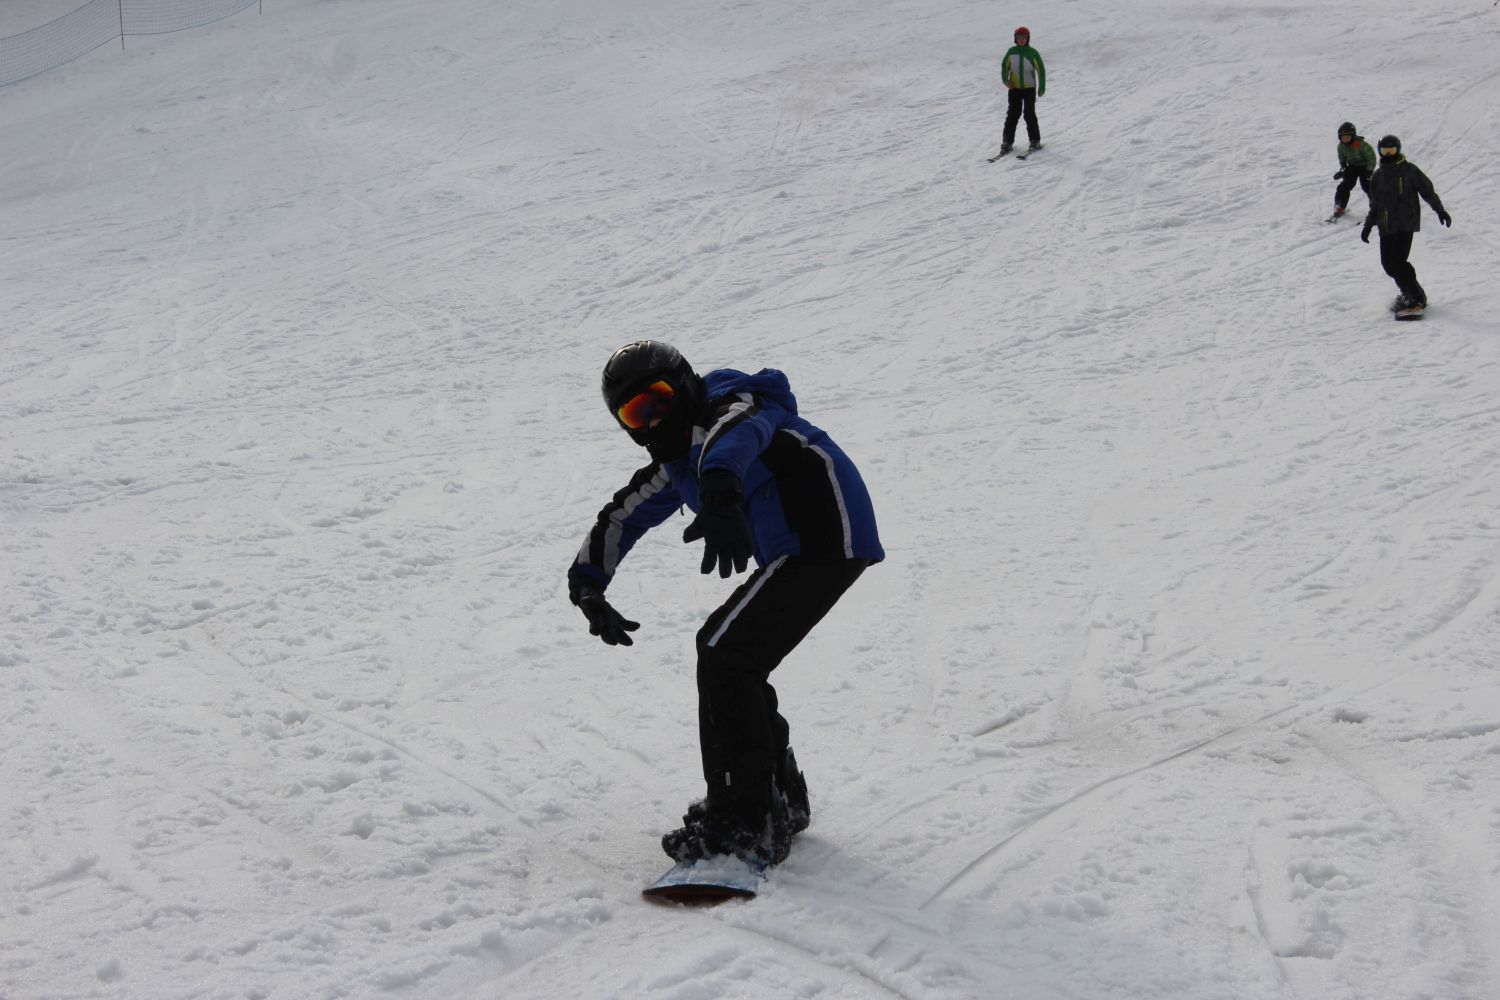 Maciej jako jeden z dwóch śmiga na snowboardzie.